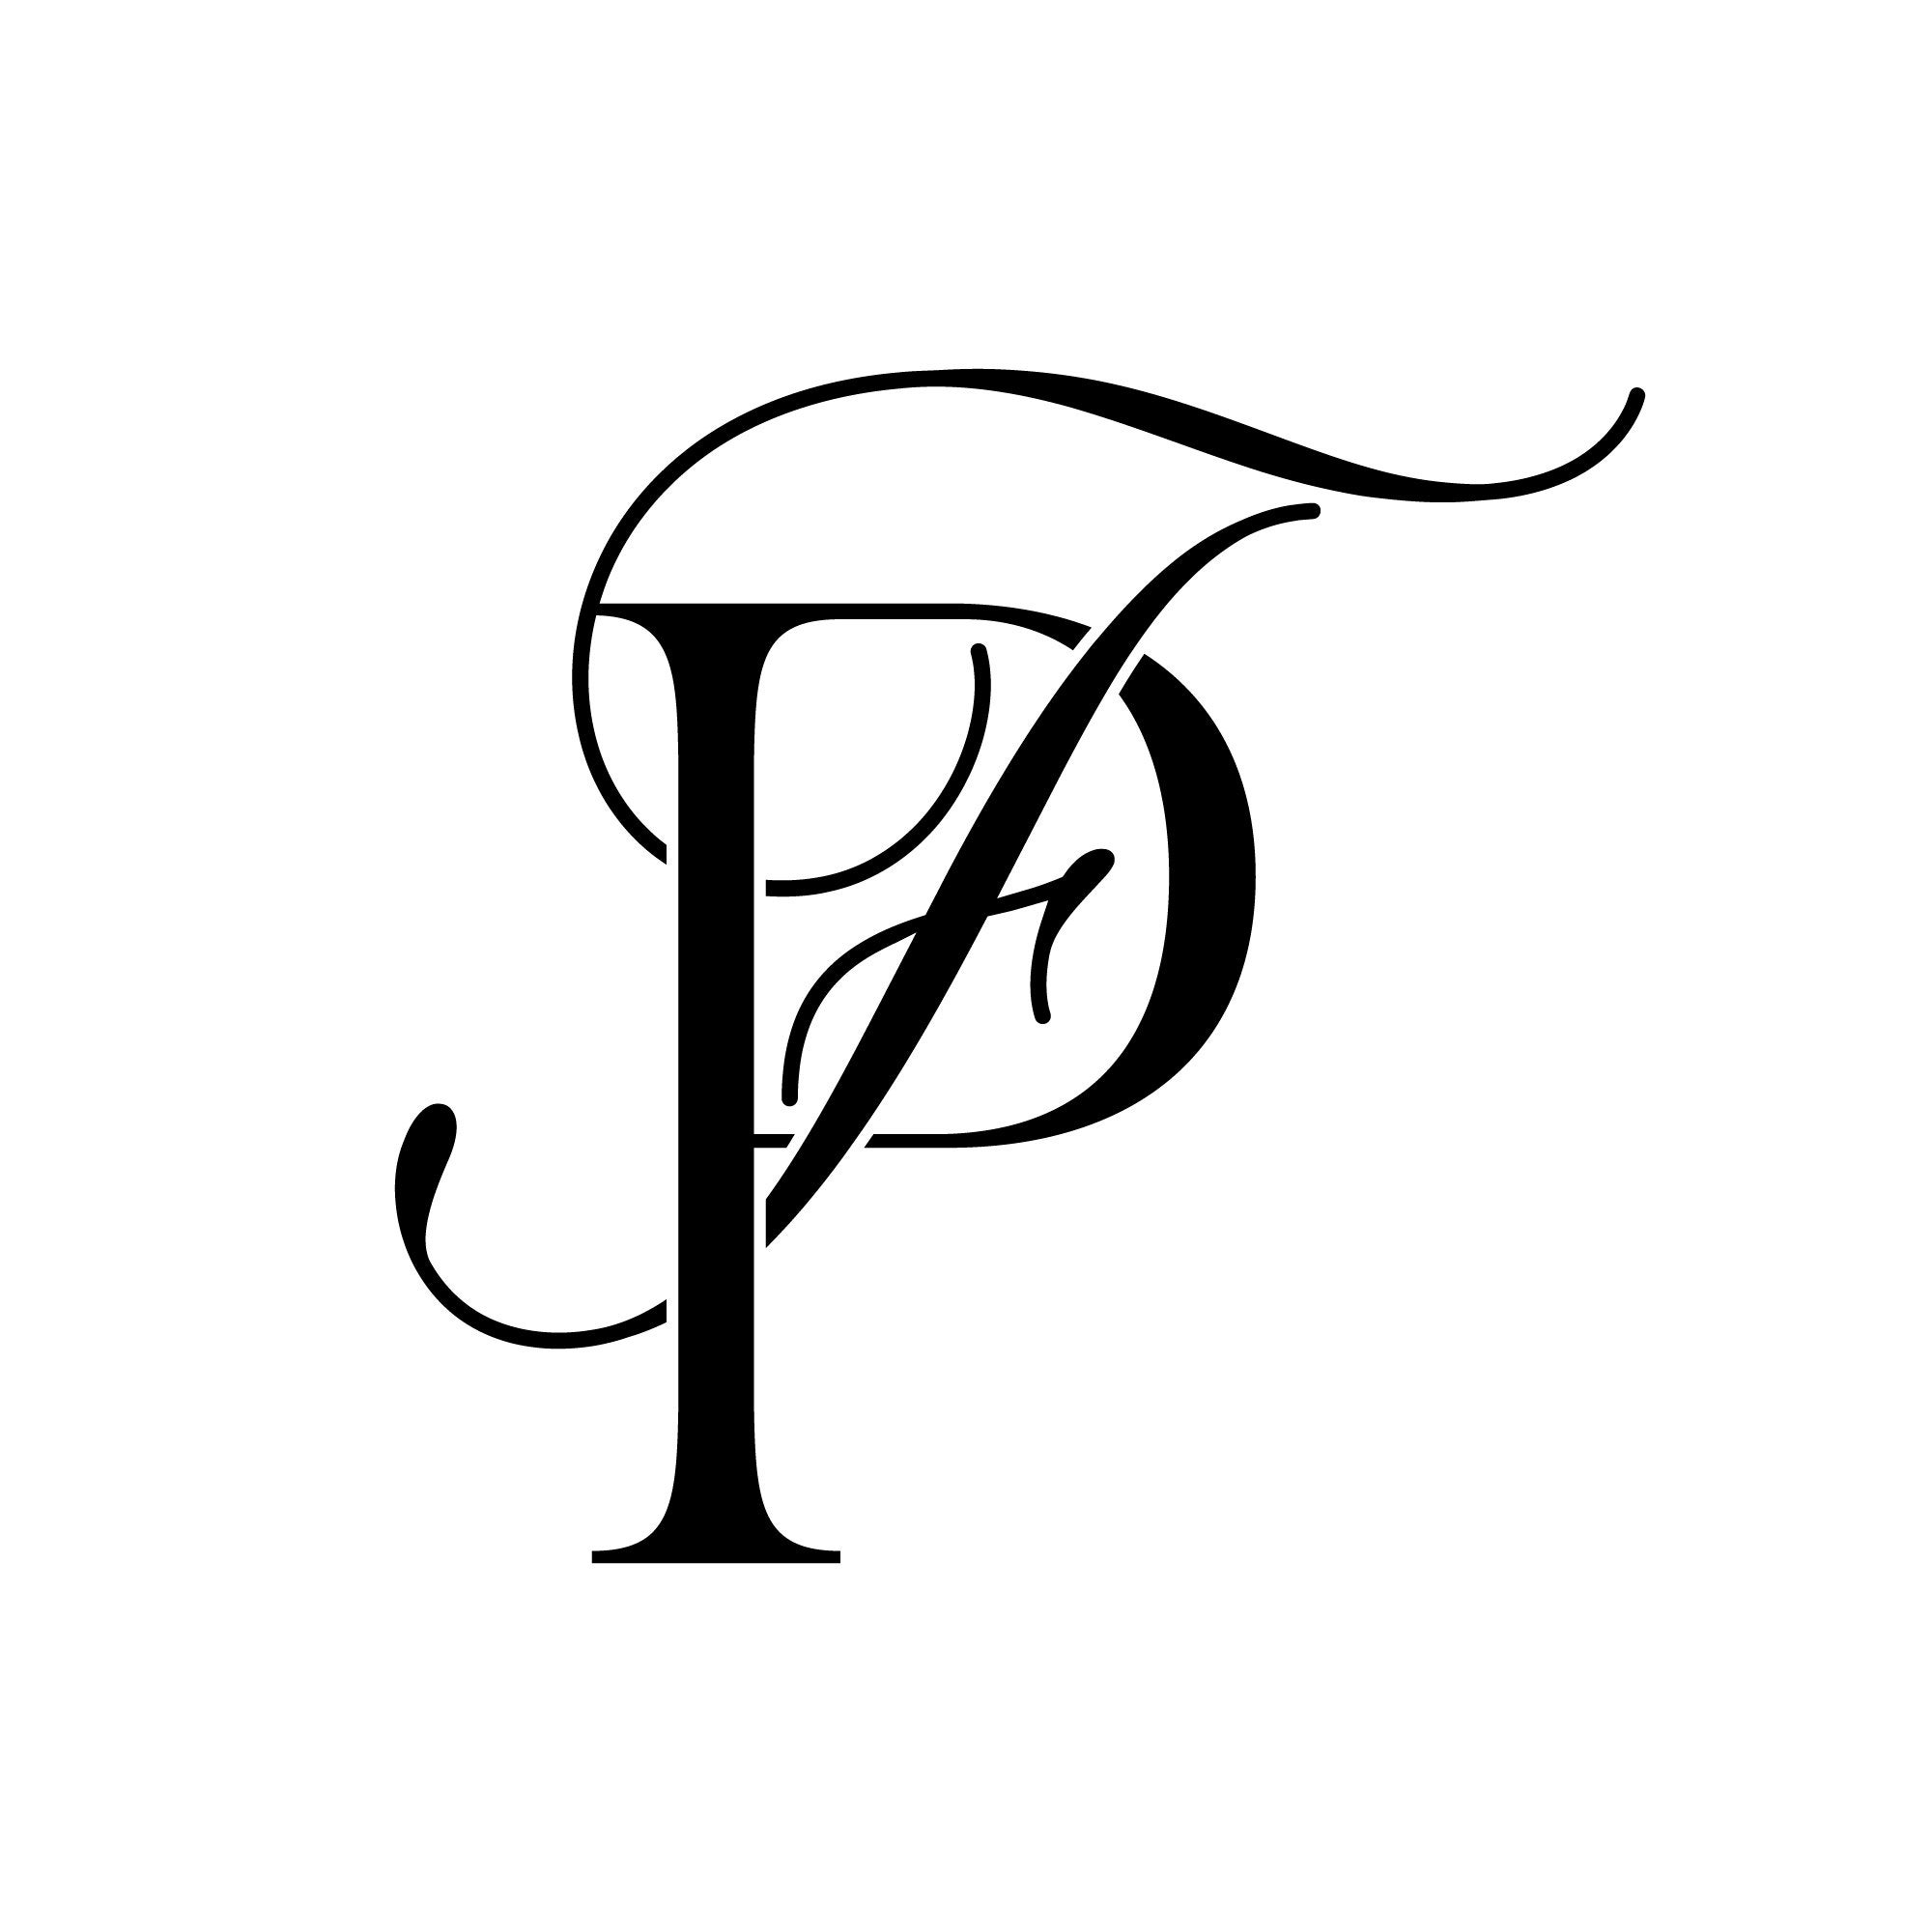 A letter logo lettermark monogram finance type Vector Image